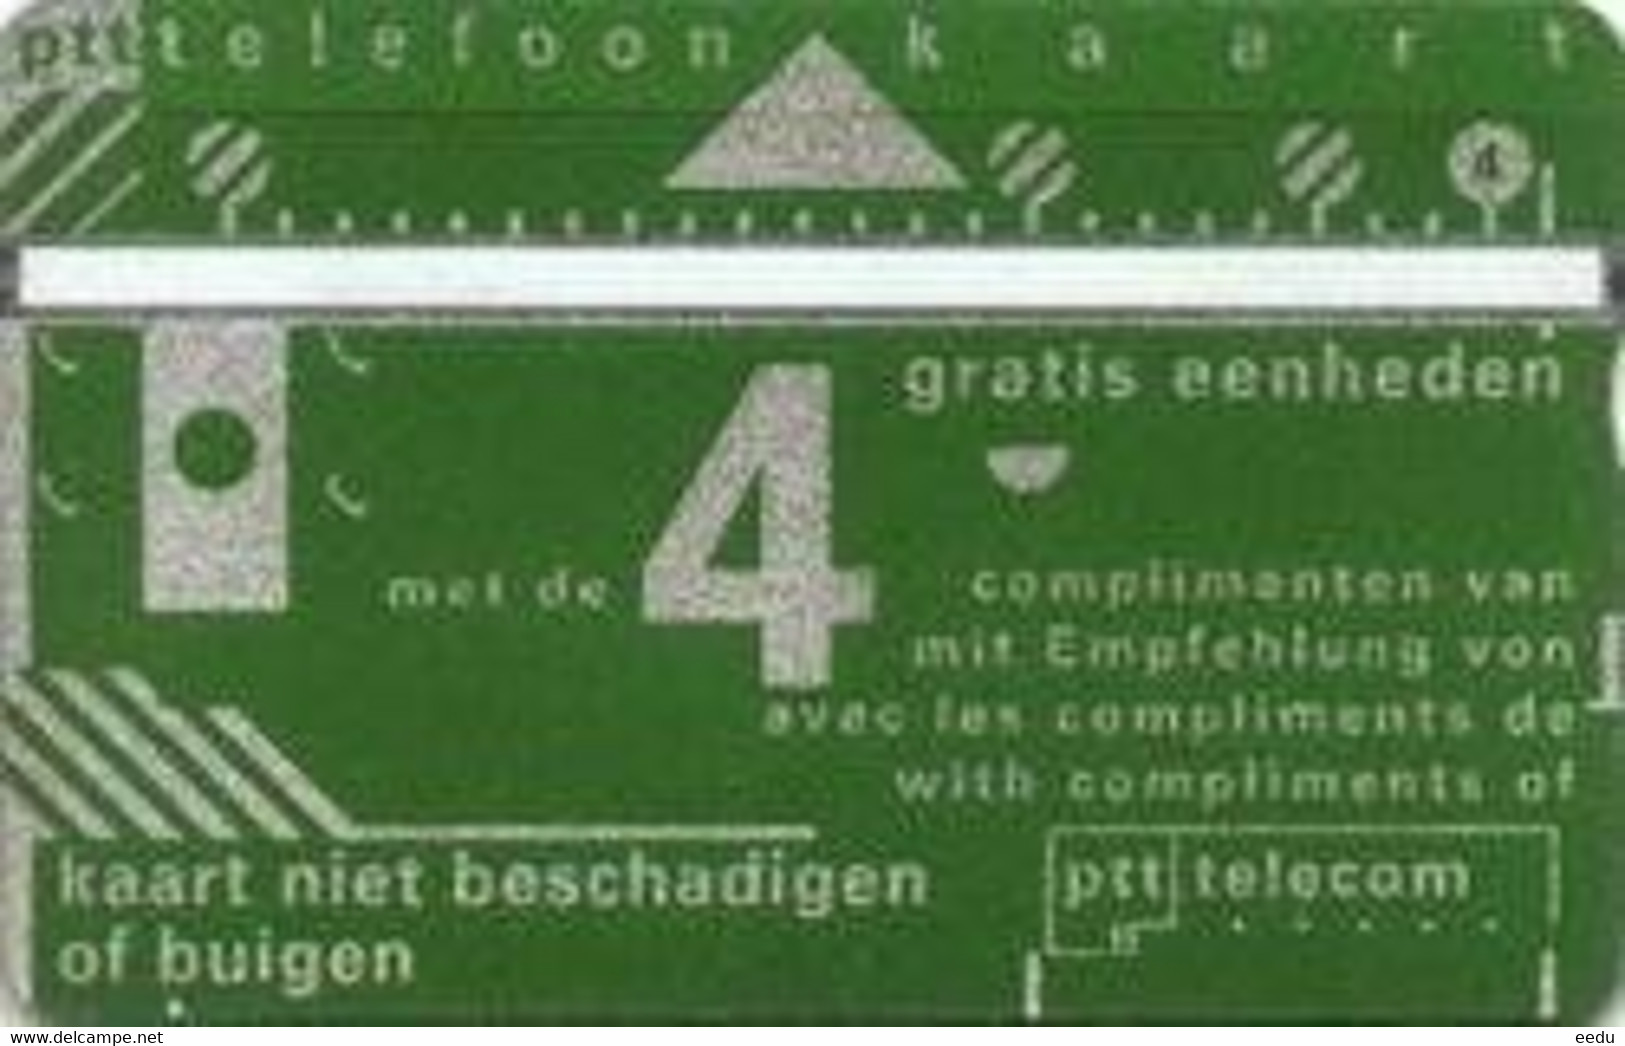 Netherlands Phonecard - Openbaar